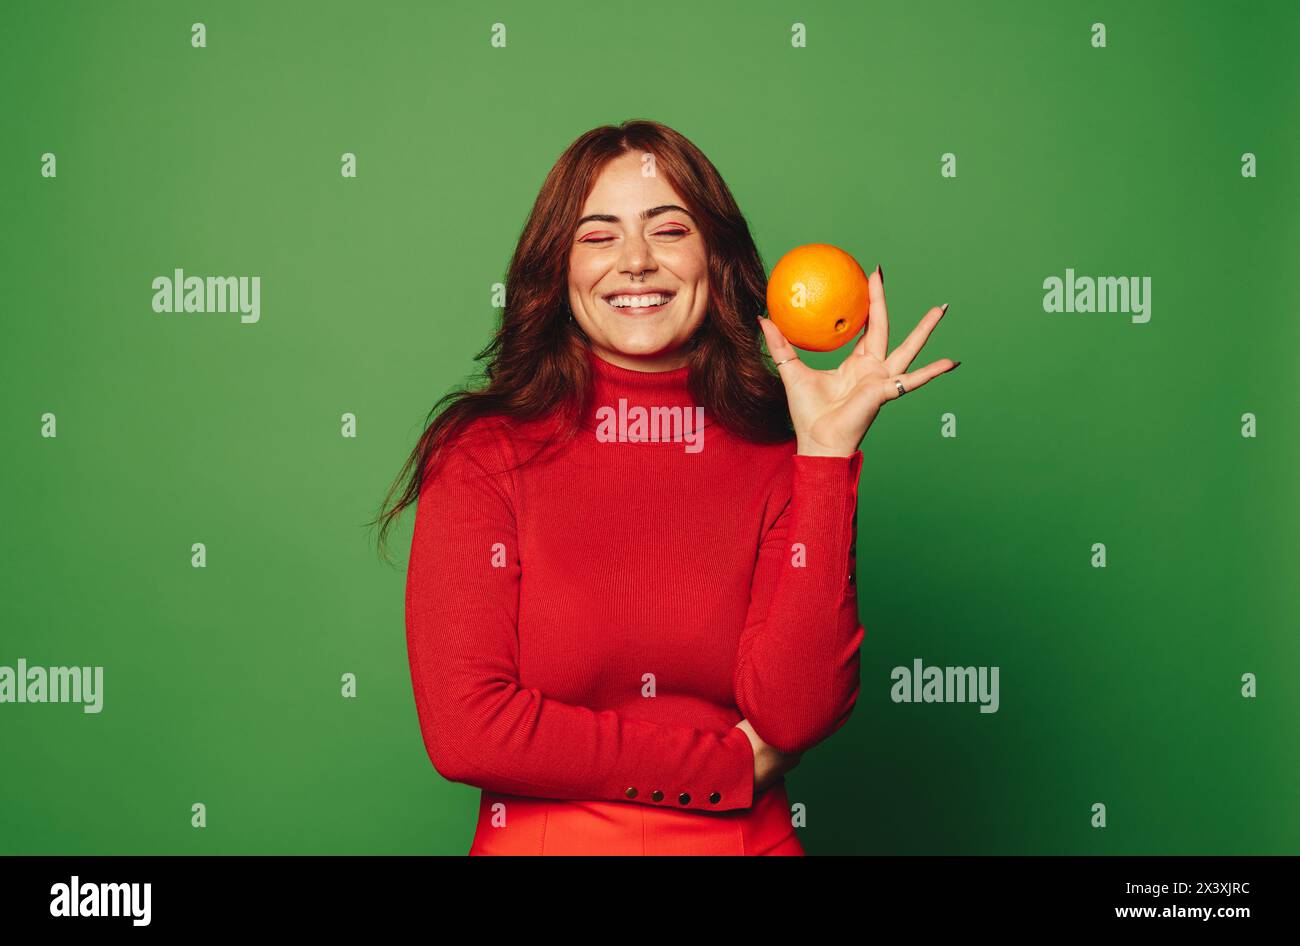 Glückliche Frau in lässiger Kleidung lächelt, während sie in einem Studio mit grünem Hintergrund eine orangene Frucht hält. Die Frucht steht für Frische, Ernährung und Wohlbefinden Stockfoto